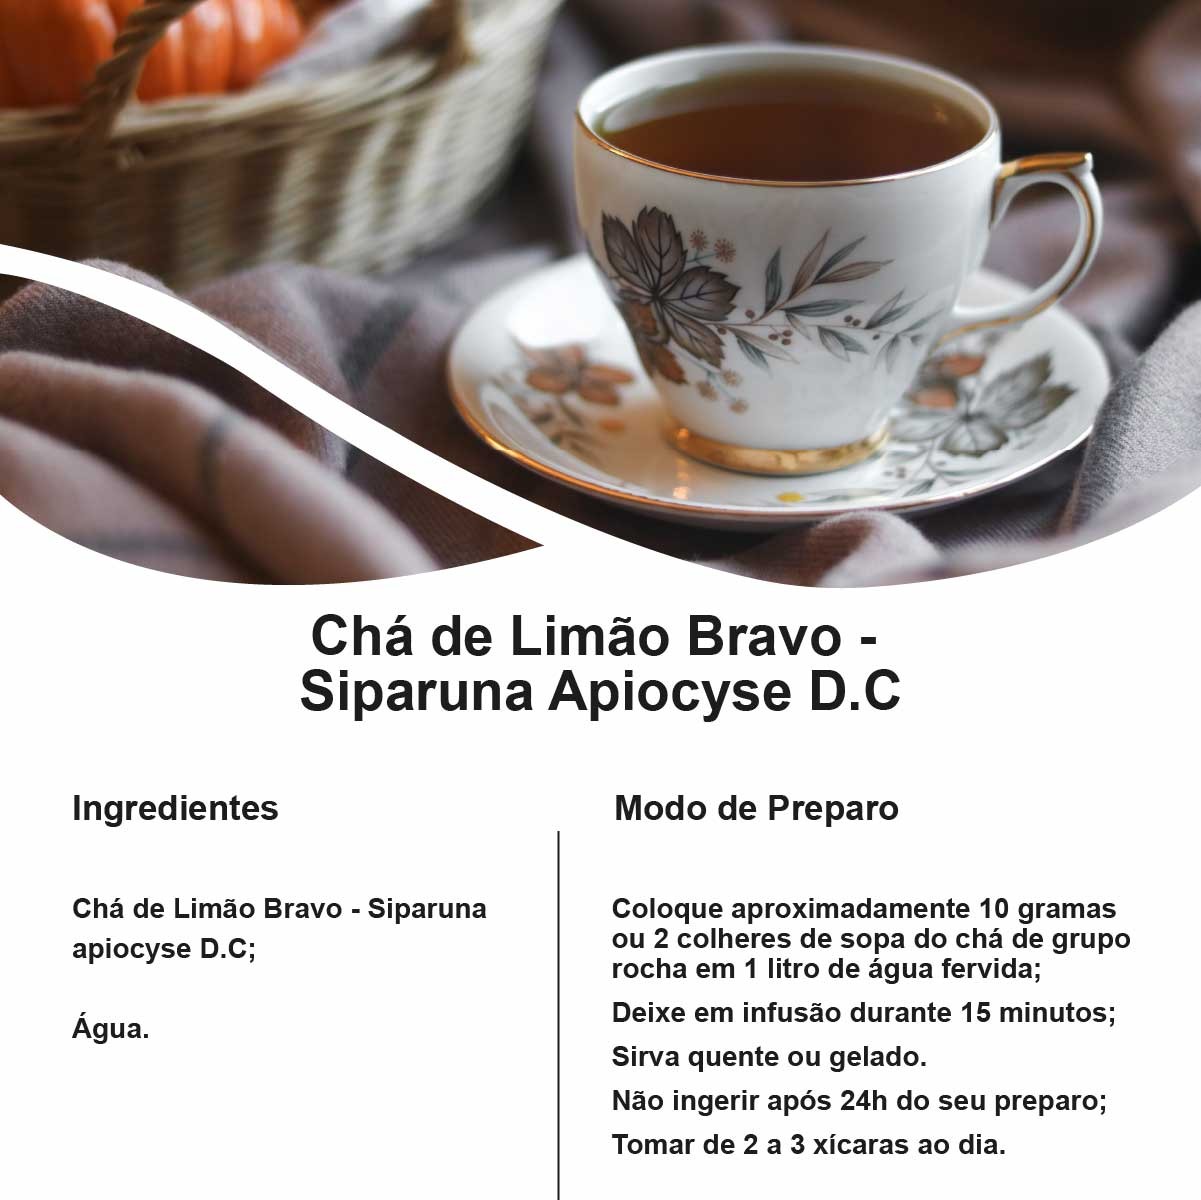 Chá de Limão Bravo - Siparuna apiocyse D.C - 100g